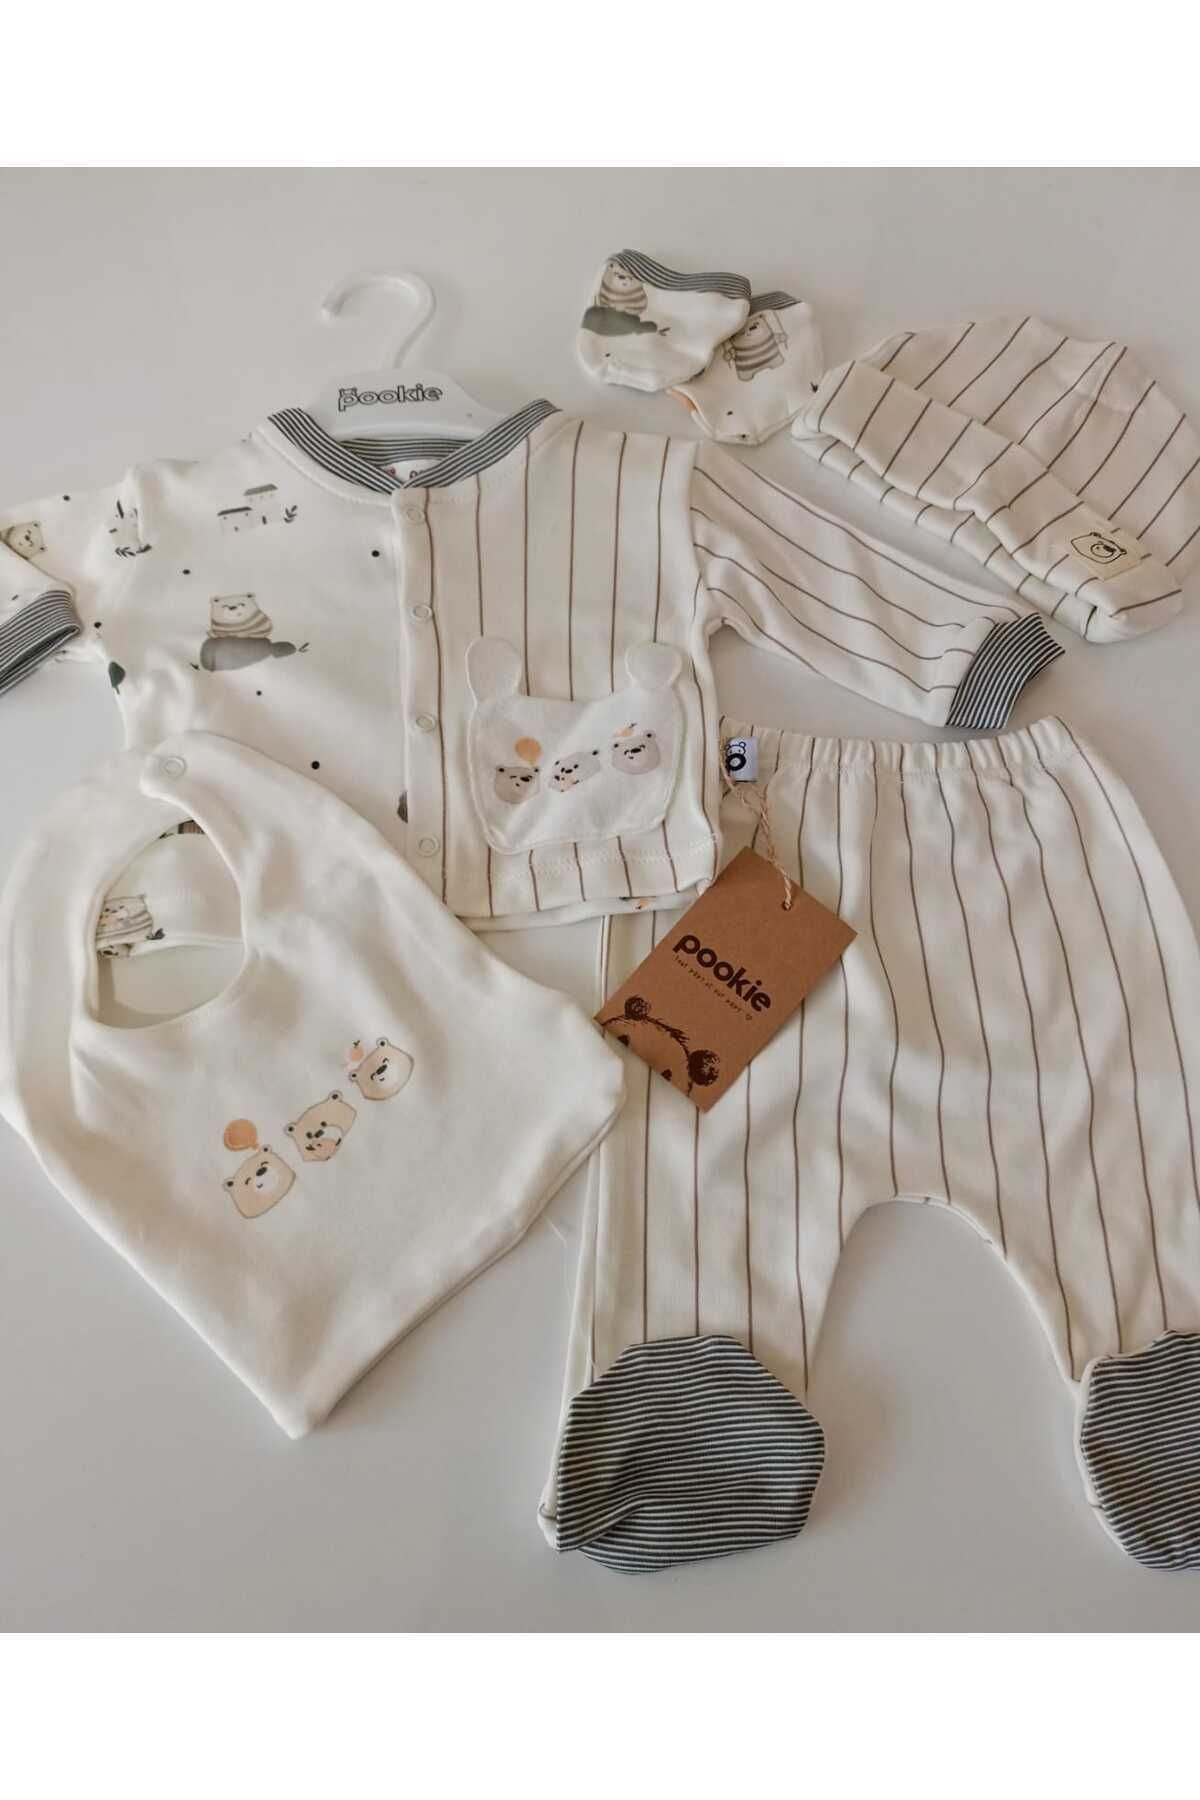 DNZDN Yenidoğan Erkek Bebek Hastane Çıkışı 5 Parça Set, Yenidoğan Kıyafetleri